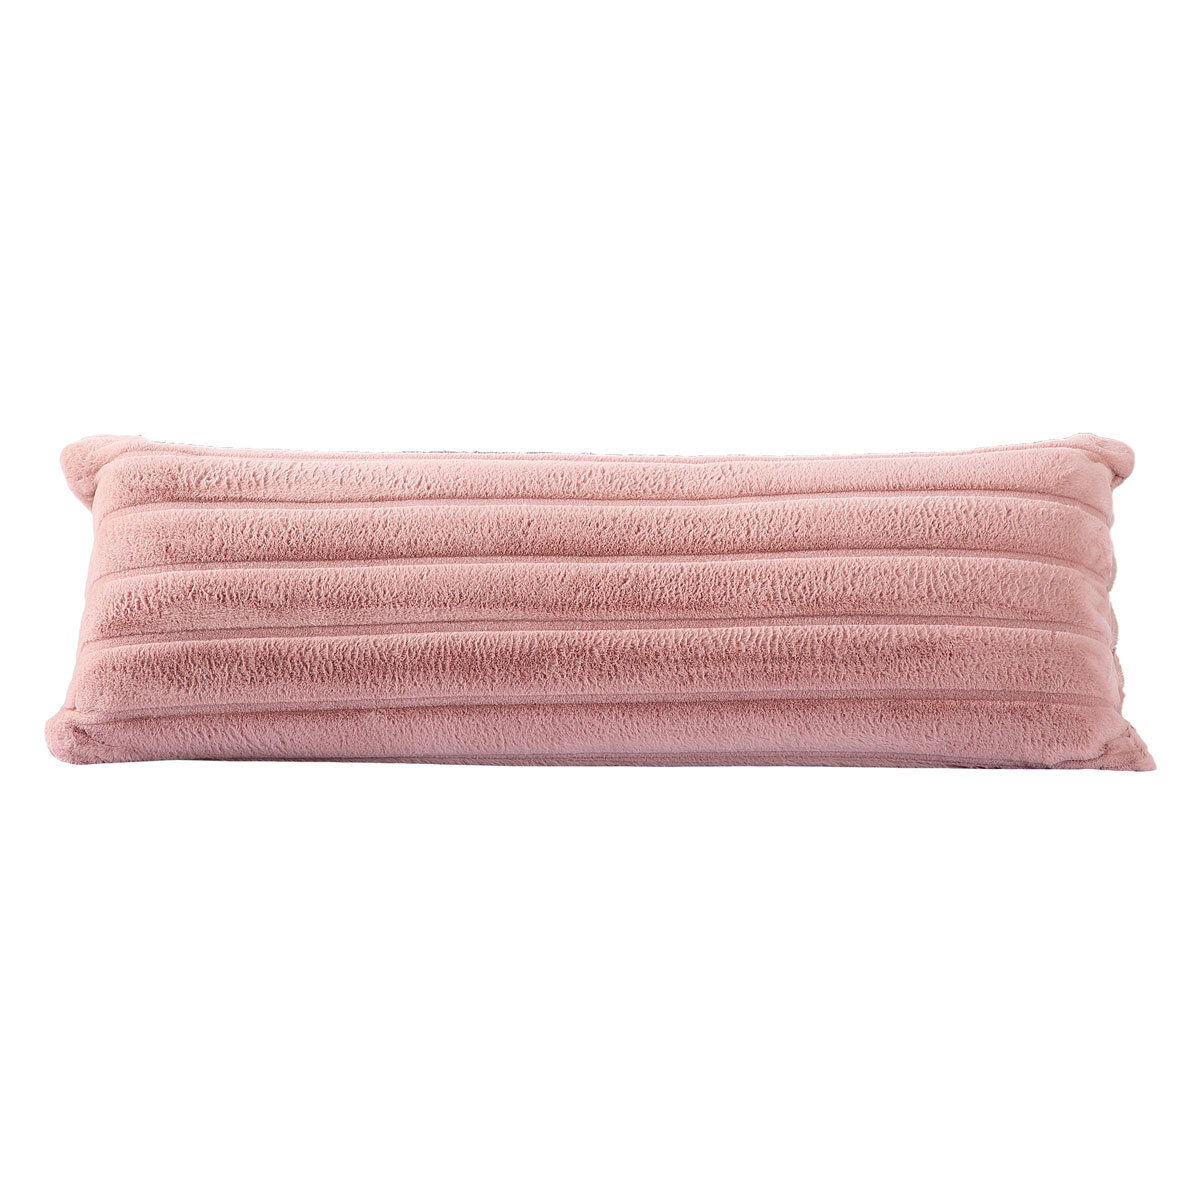 Faux Fur Body Pillow in 3 Colours, 51 x 137 cm